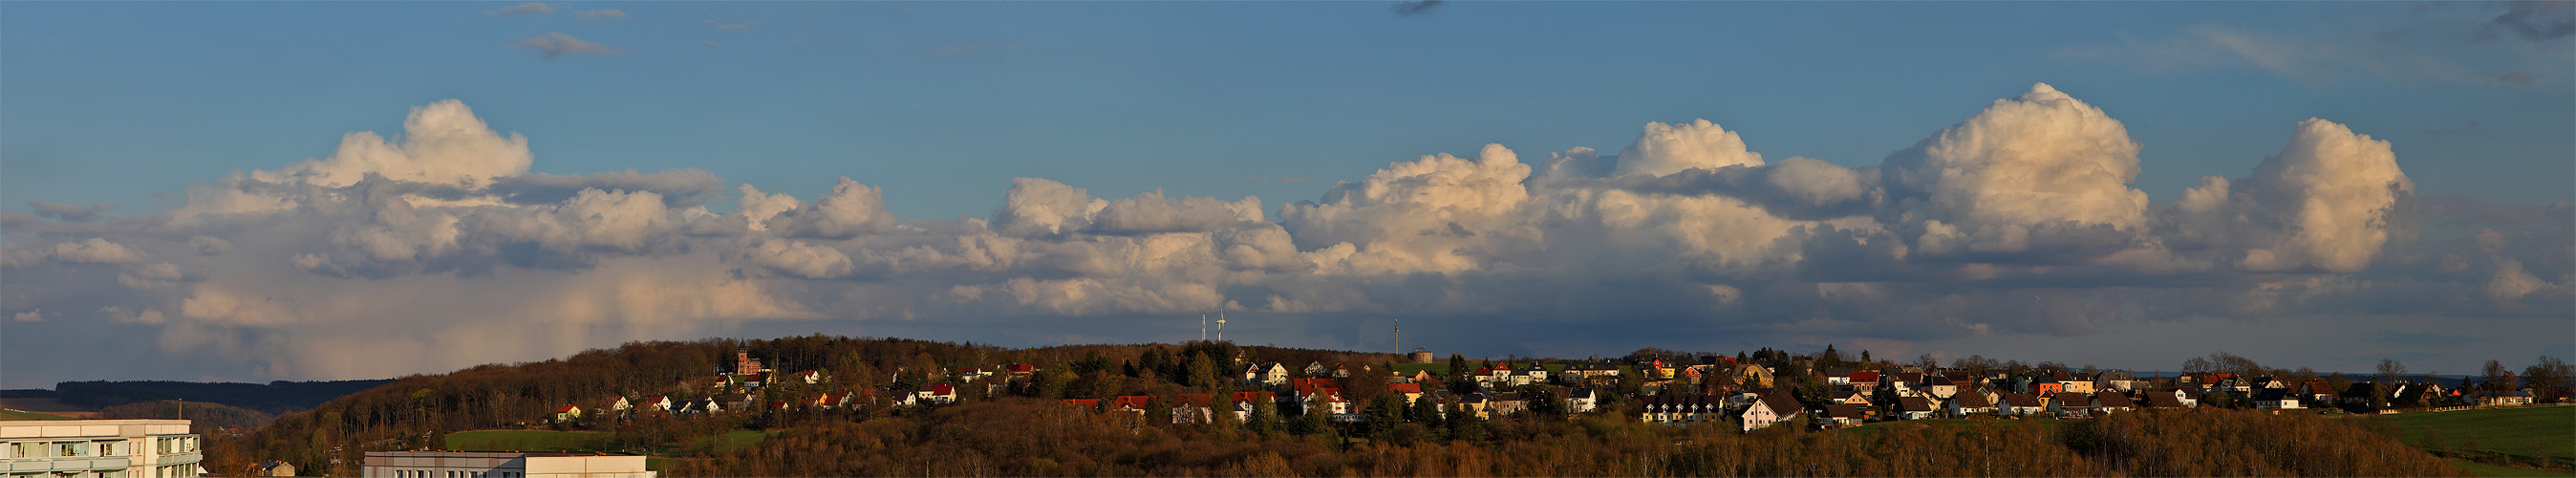 Panorama mit Wolkenbank